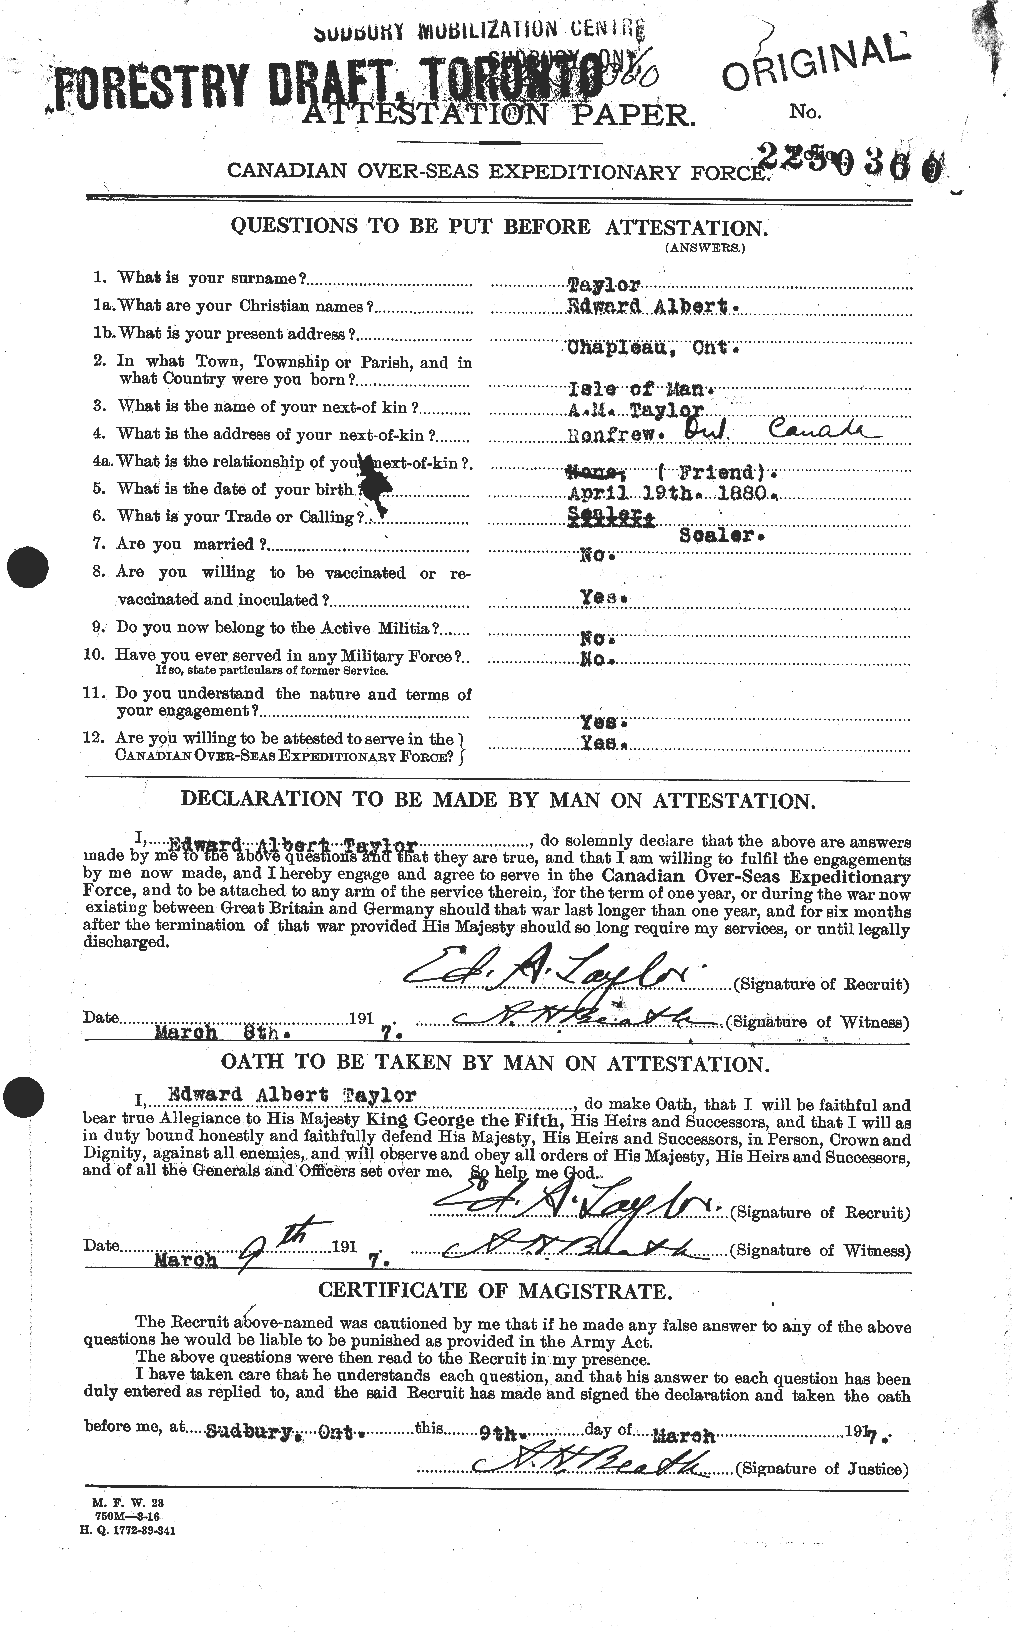 Dossiers du Personnel de la Première Guerre mondiale - CEC 627298a